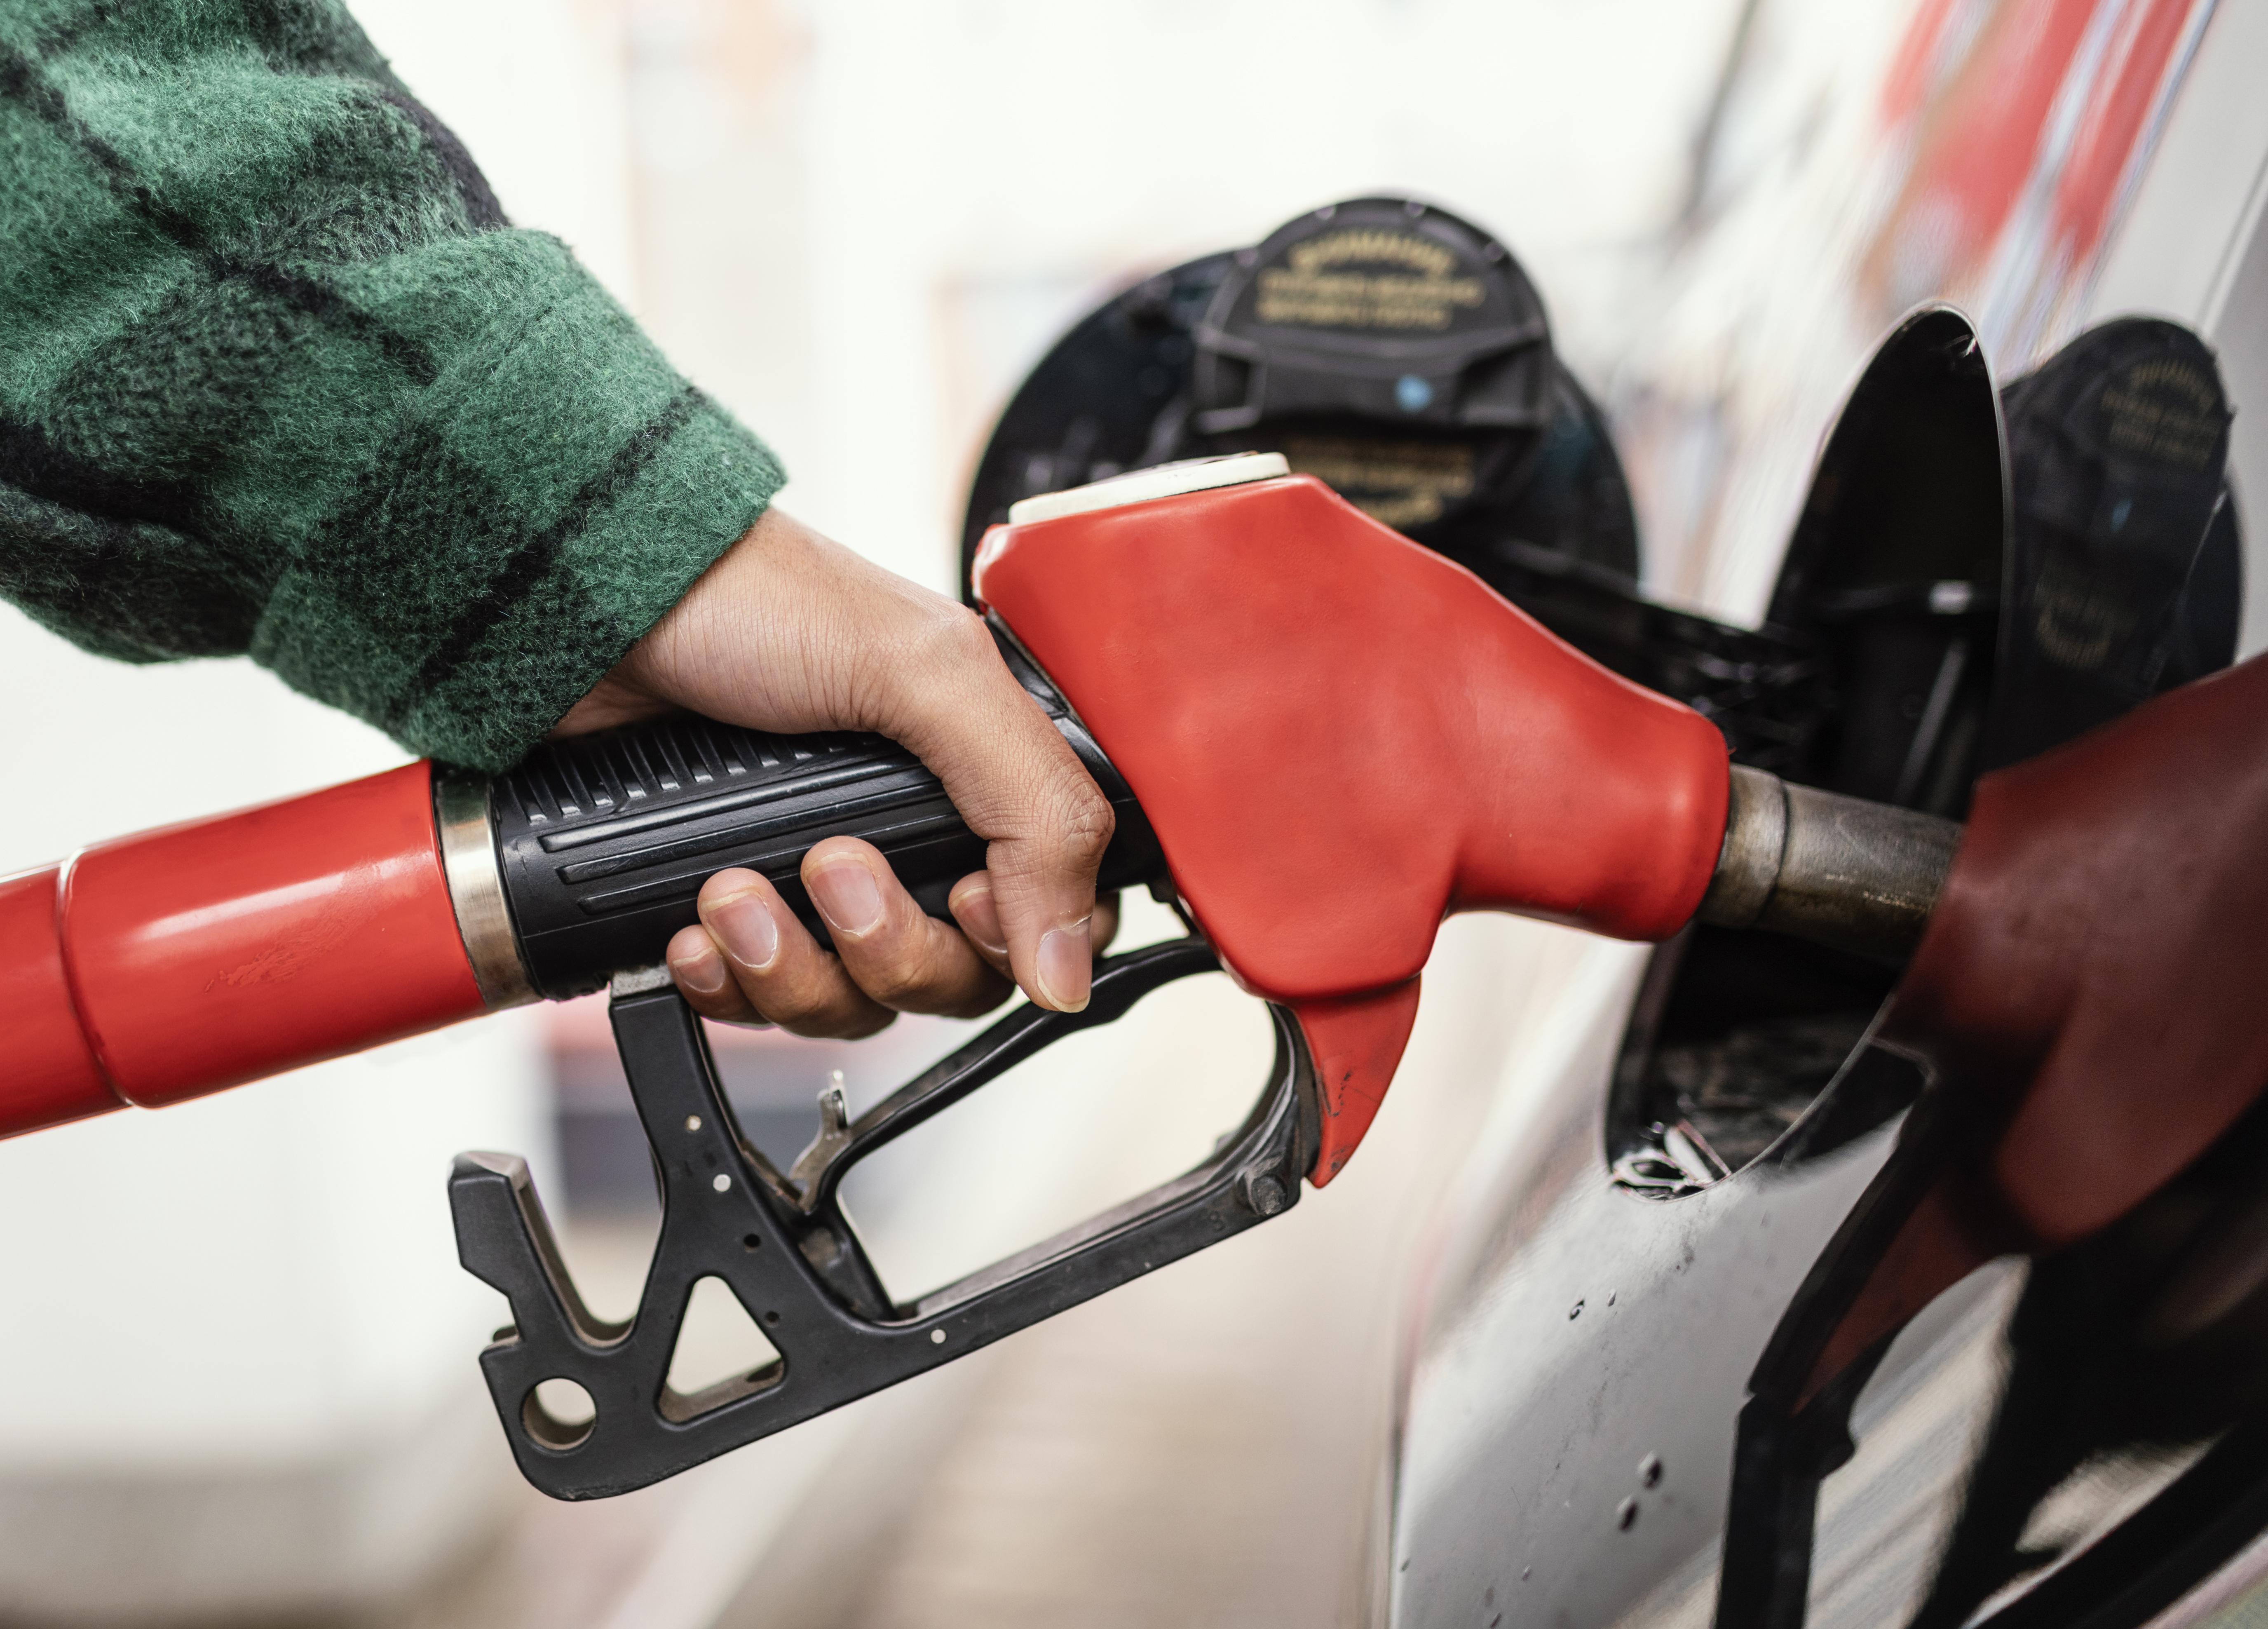  Цены пойдут вниз: правительство готово принять окончательное решение по бензину — дальше ждать нельзя 